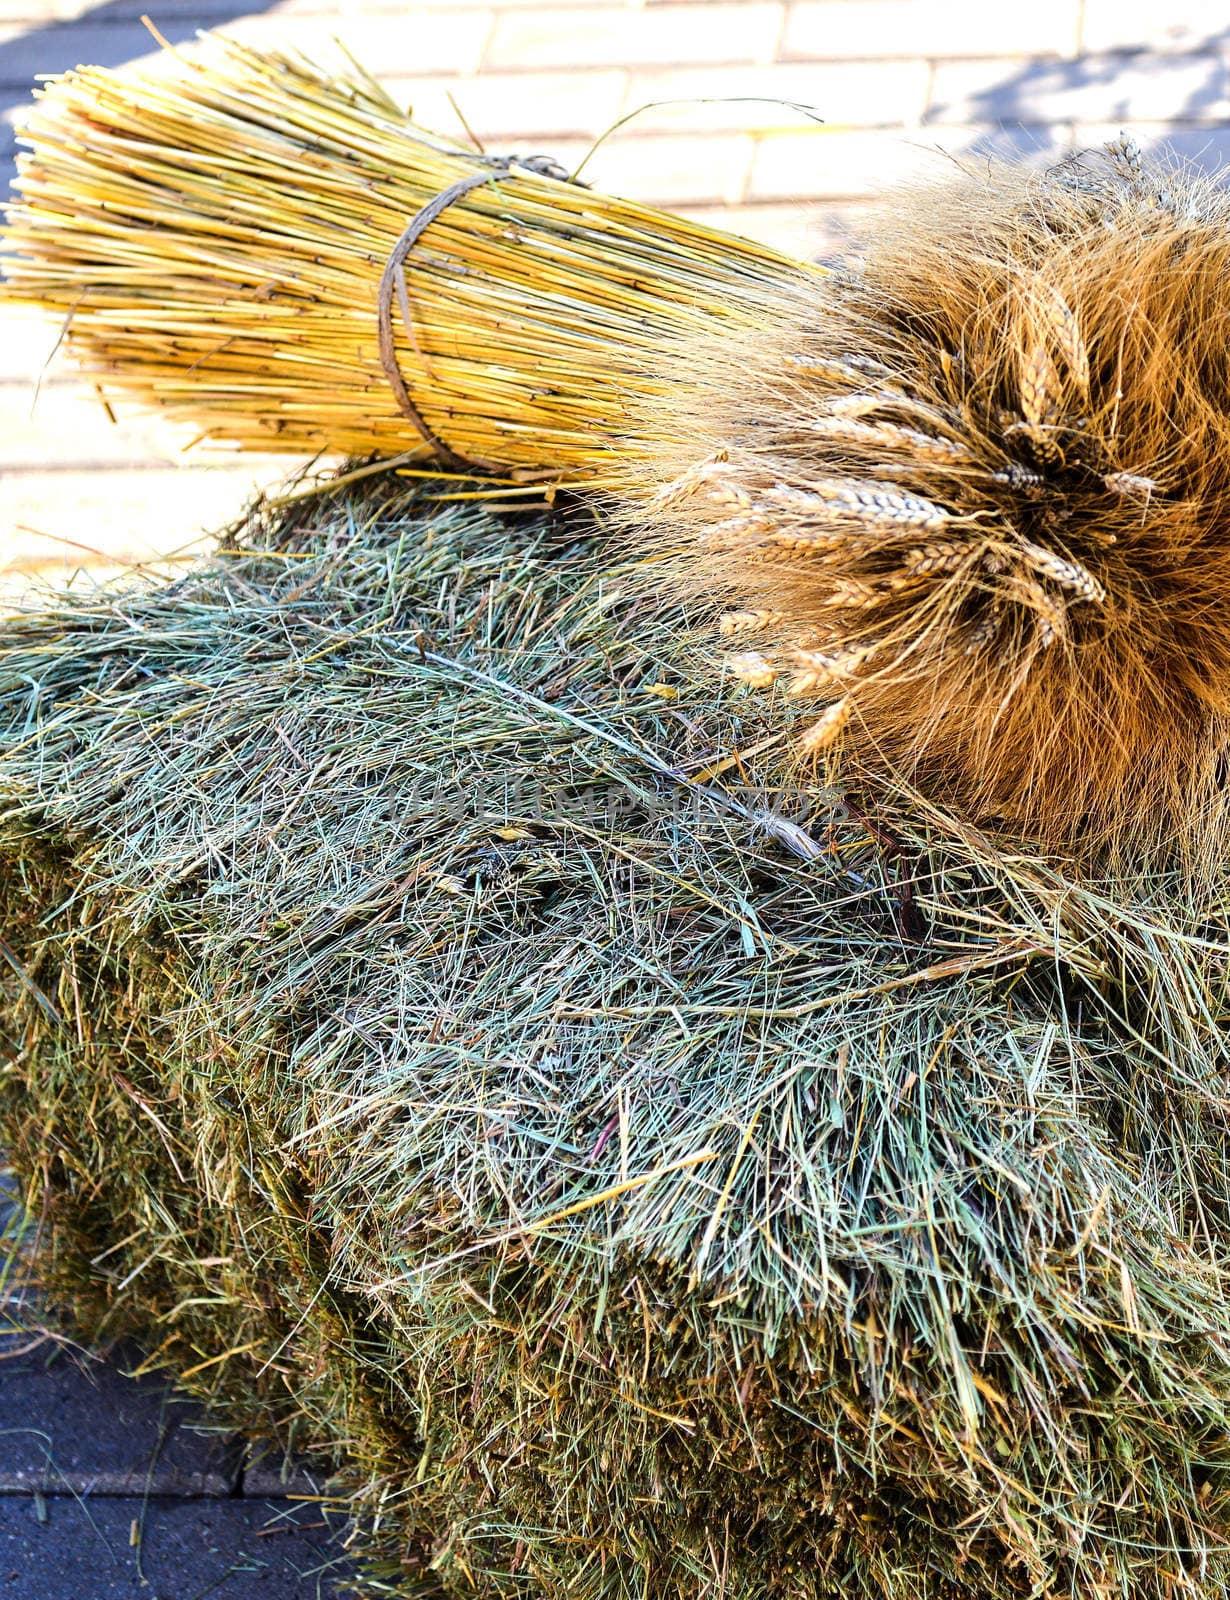 a sheaf of hay